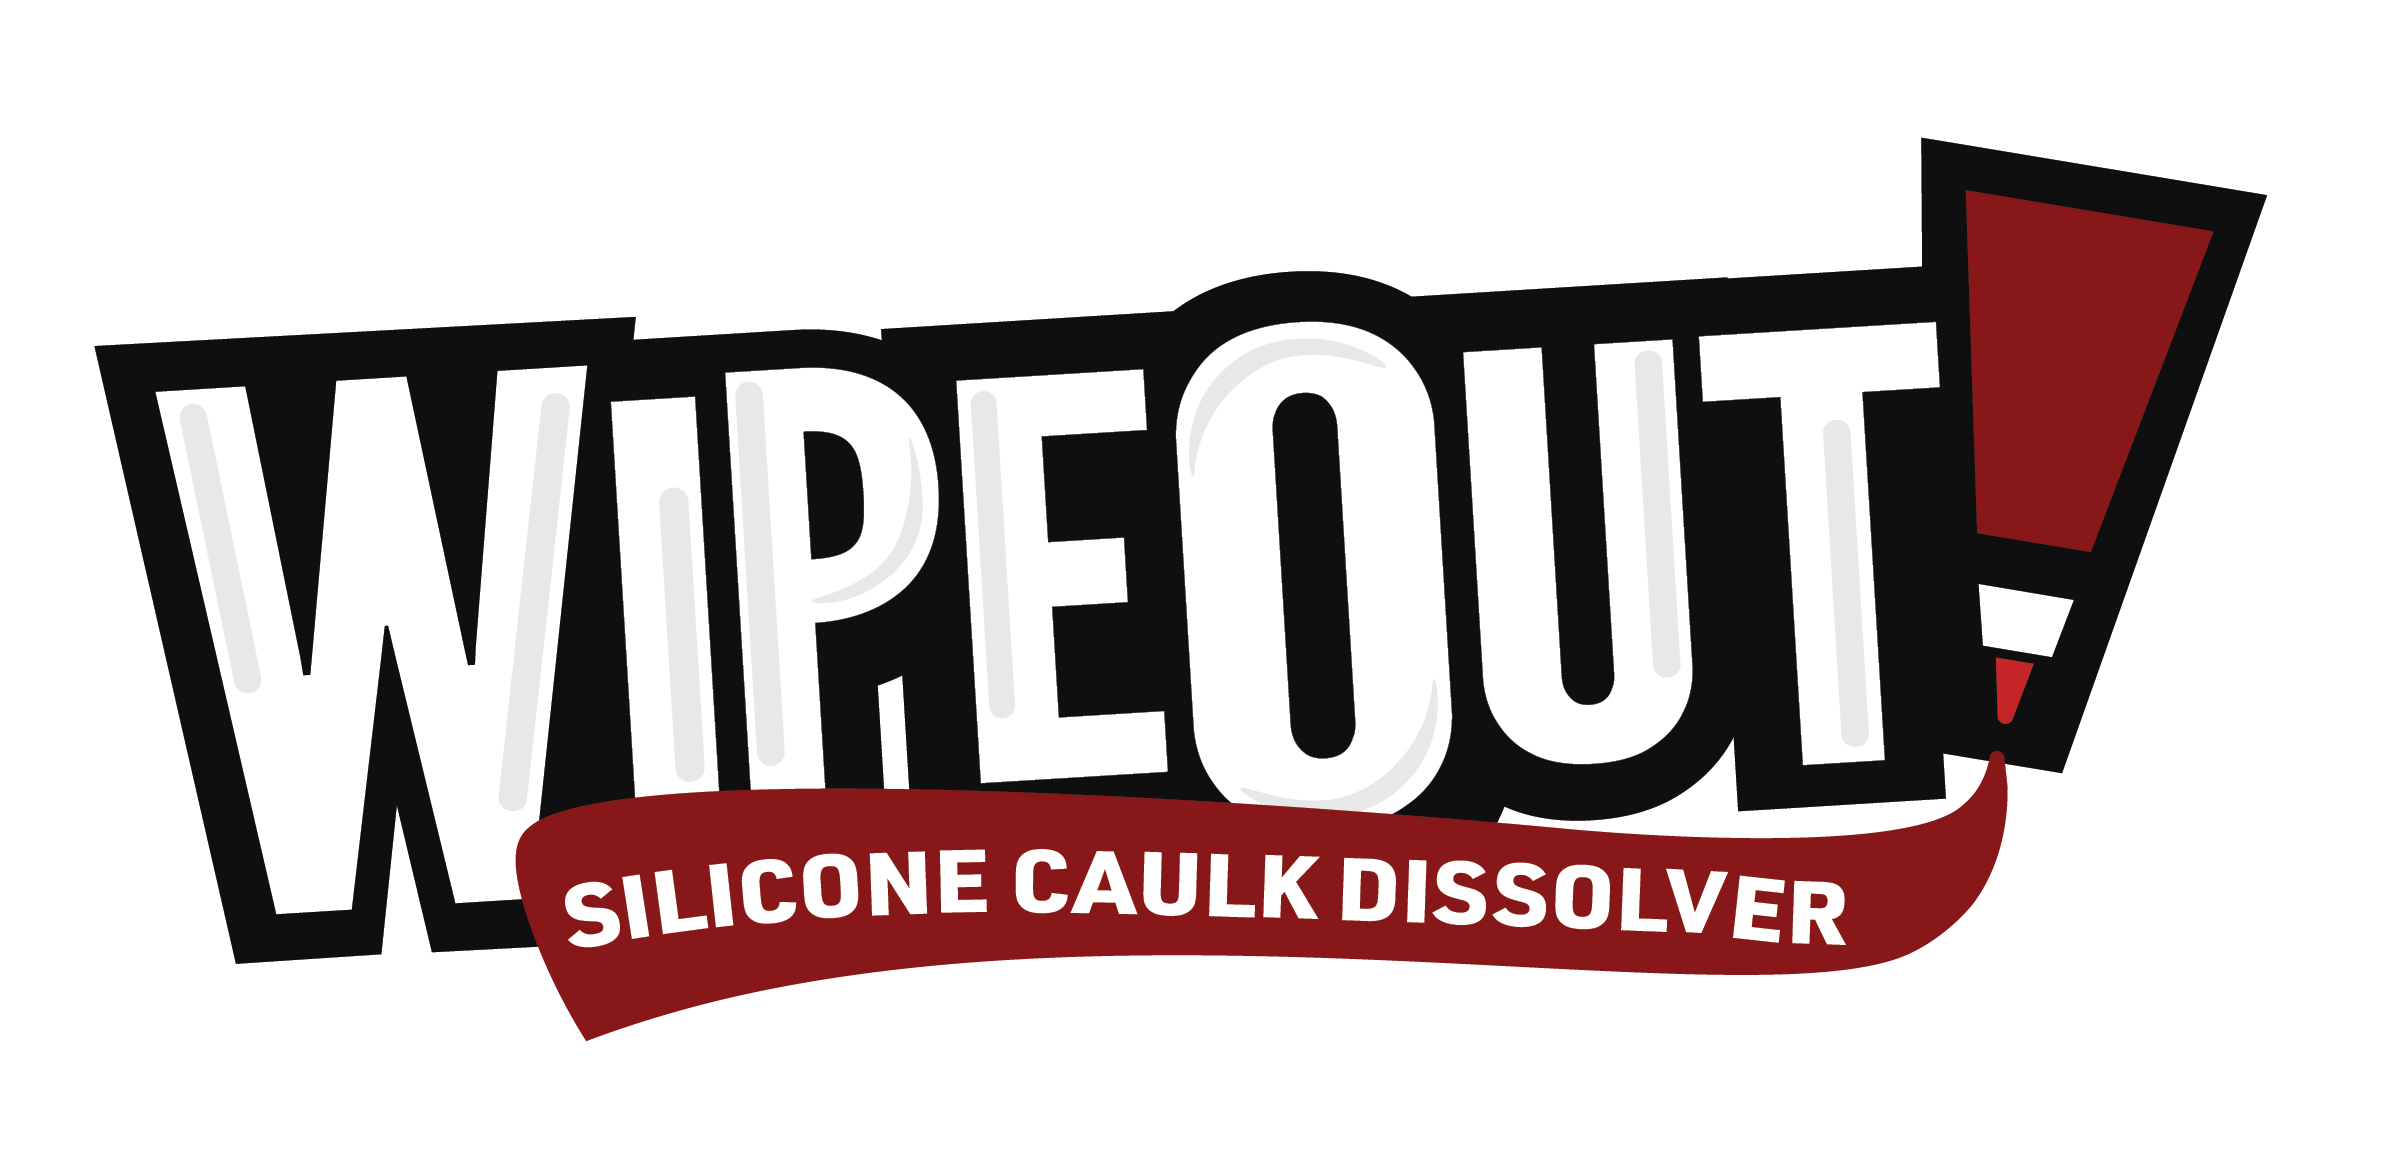 WipeOut! Silicone Caulk Dissolver